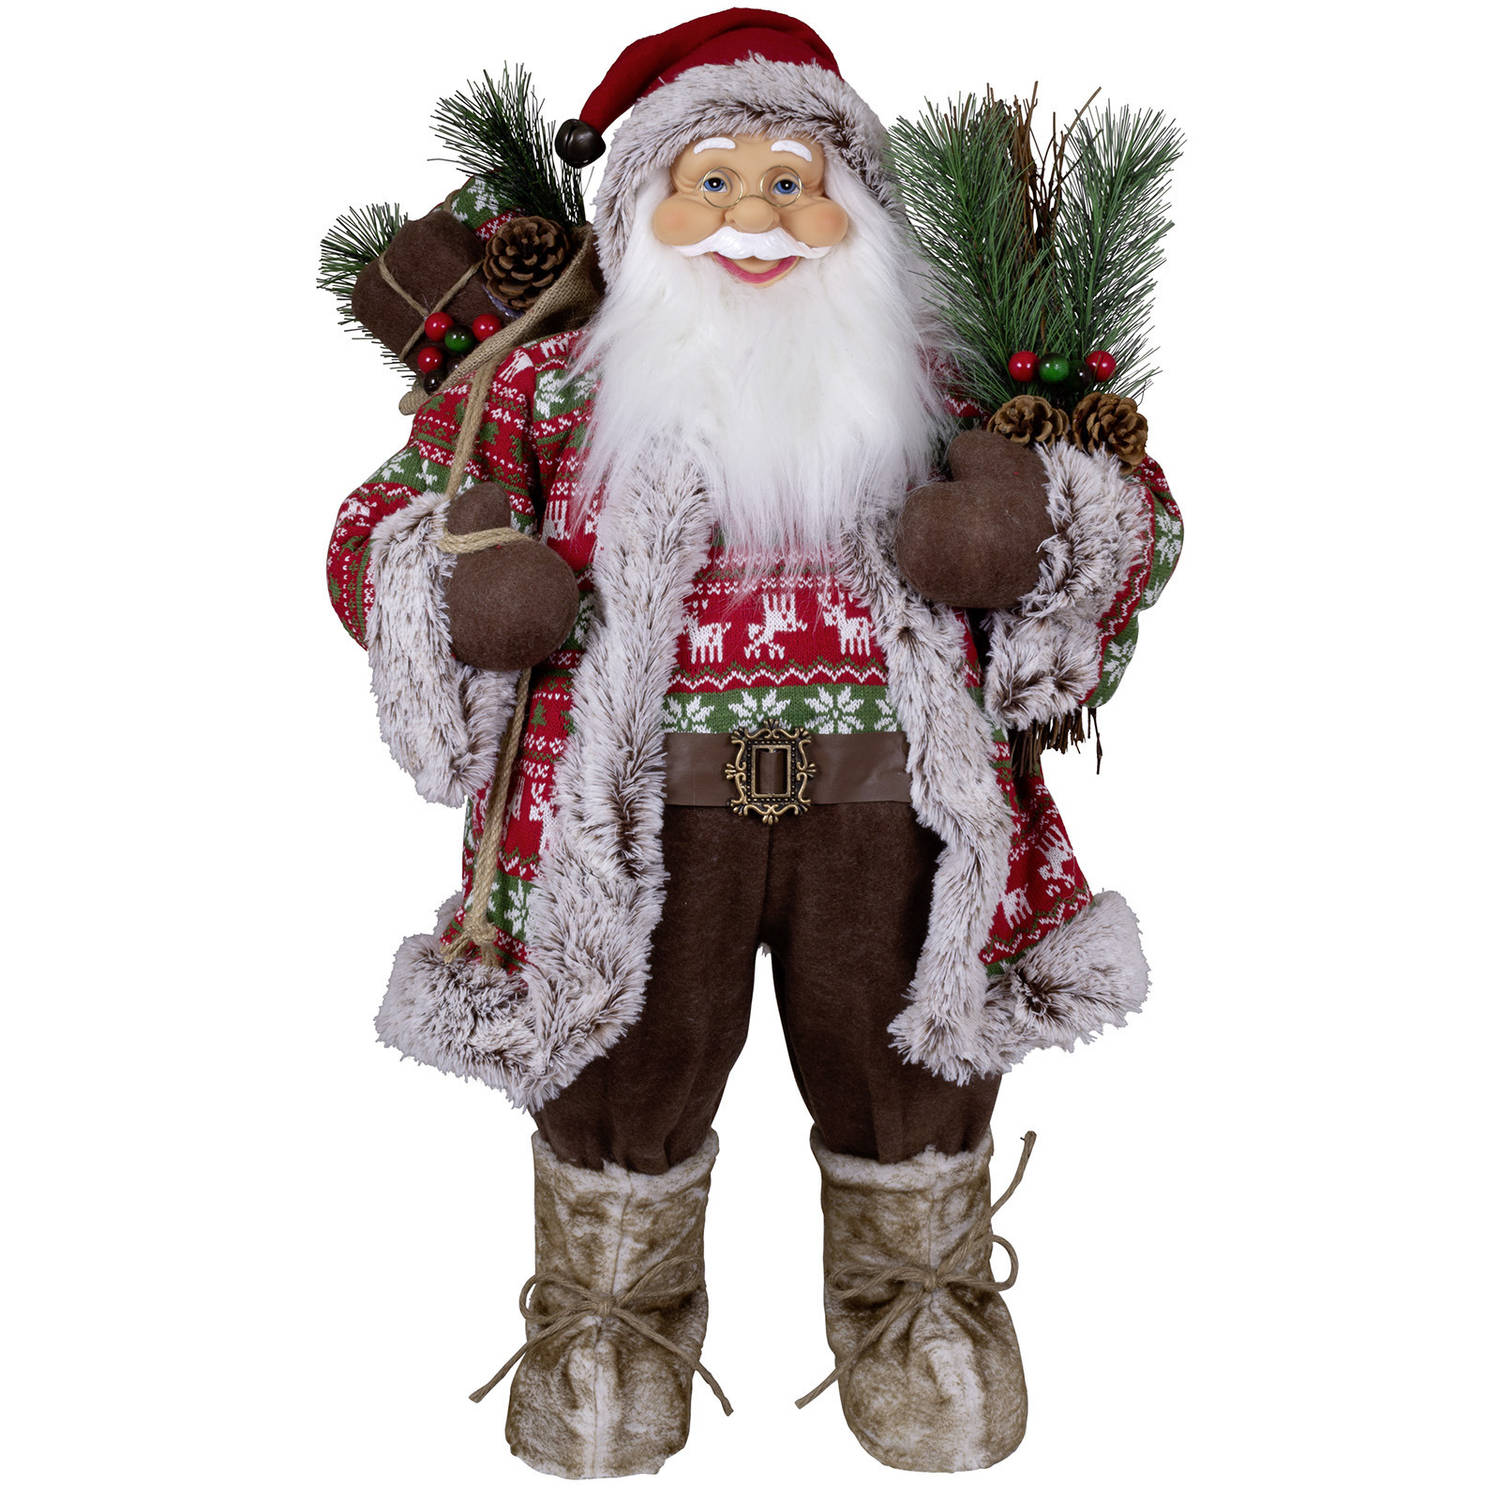 Kerstman decoratie pop Jan - H80 cm - rood - staand - kerst beeld - kerst figuur